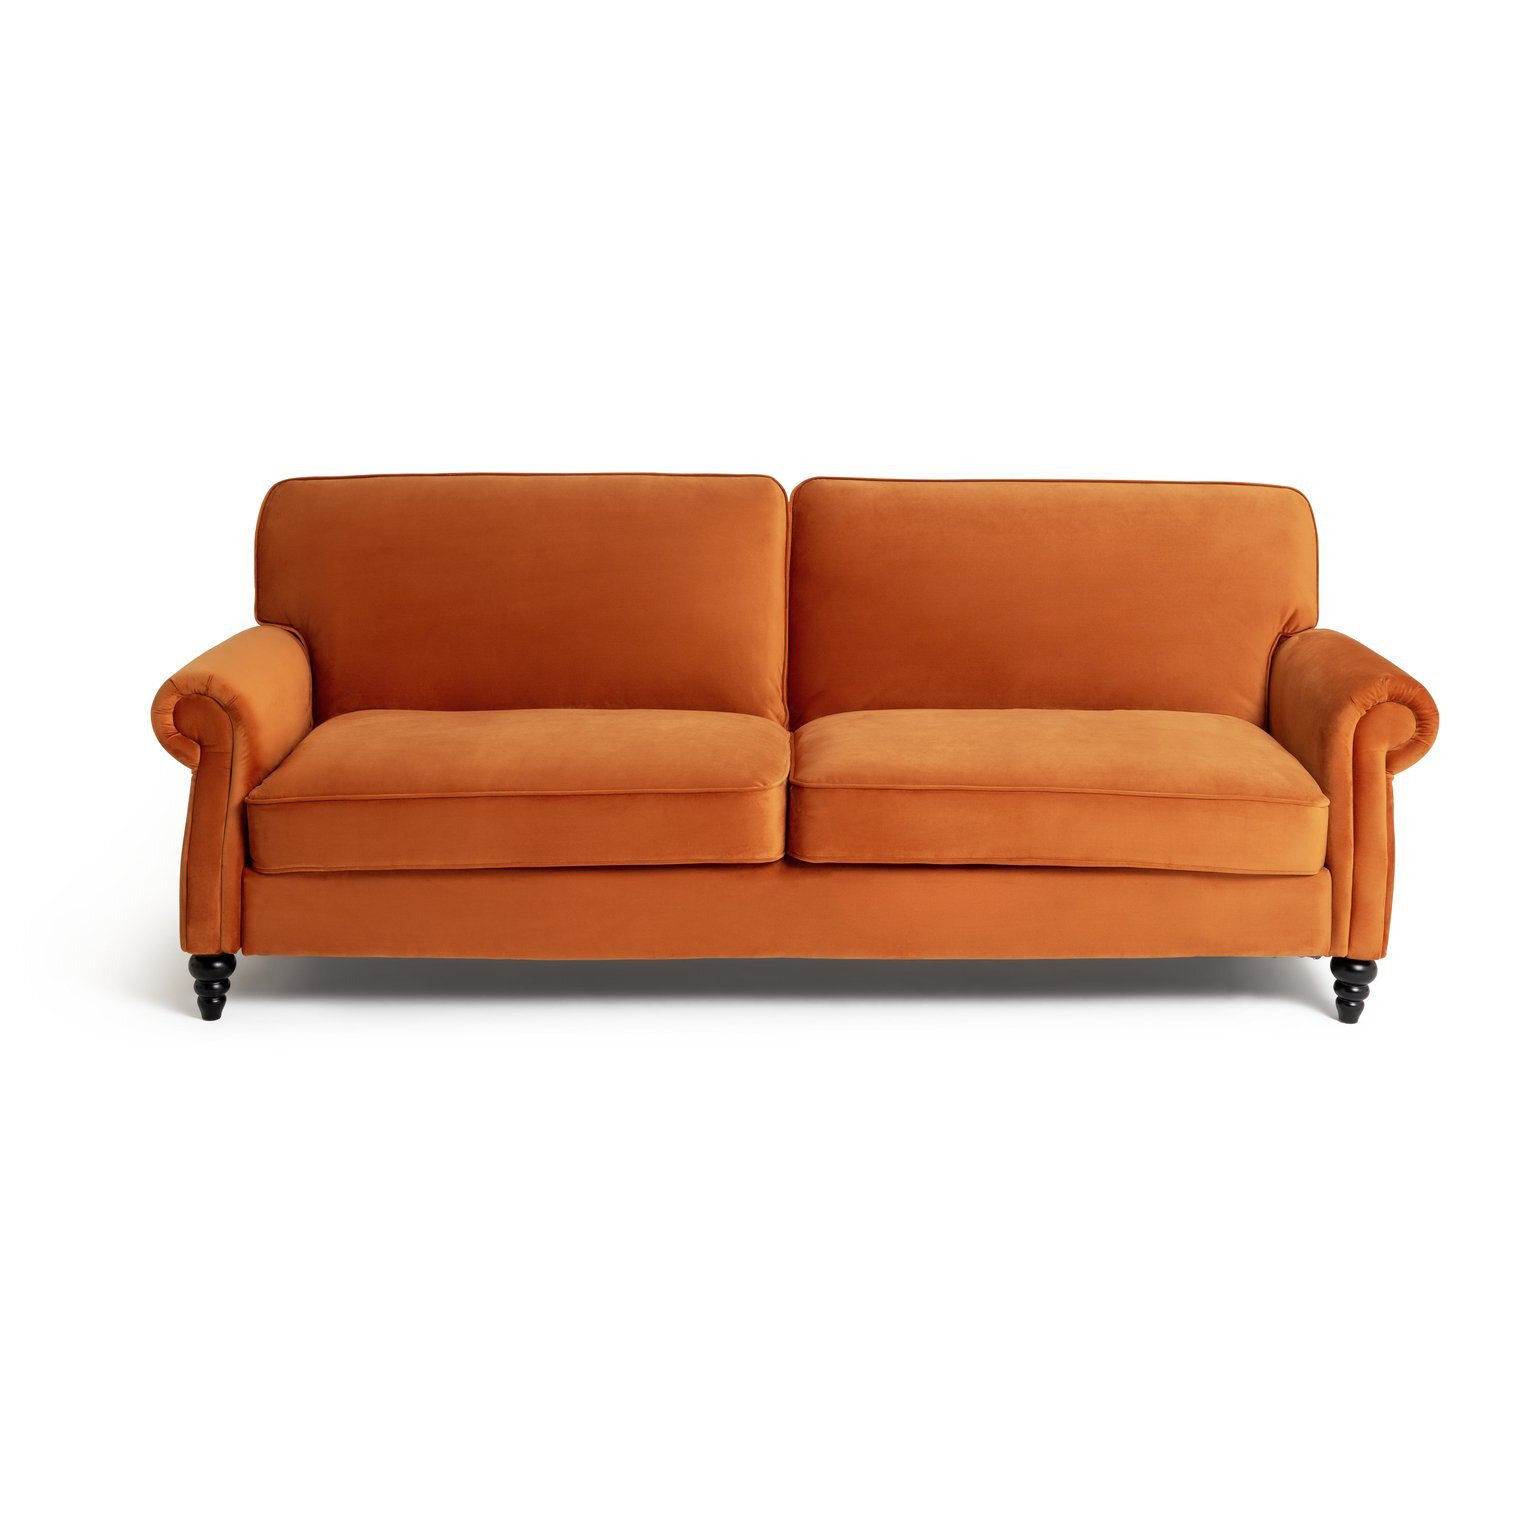 Habitat Joel Fabric 3 Seater Clic Clac Sofa Bed - Orange - image 1